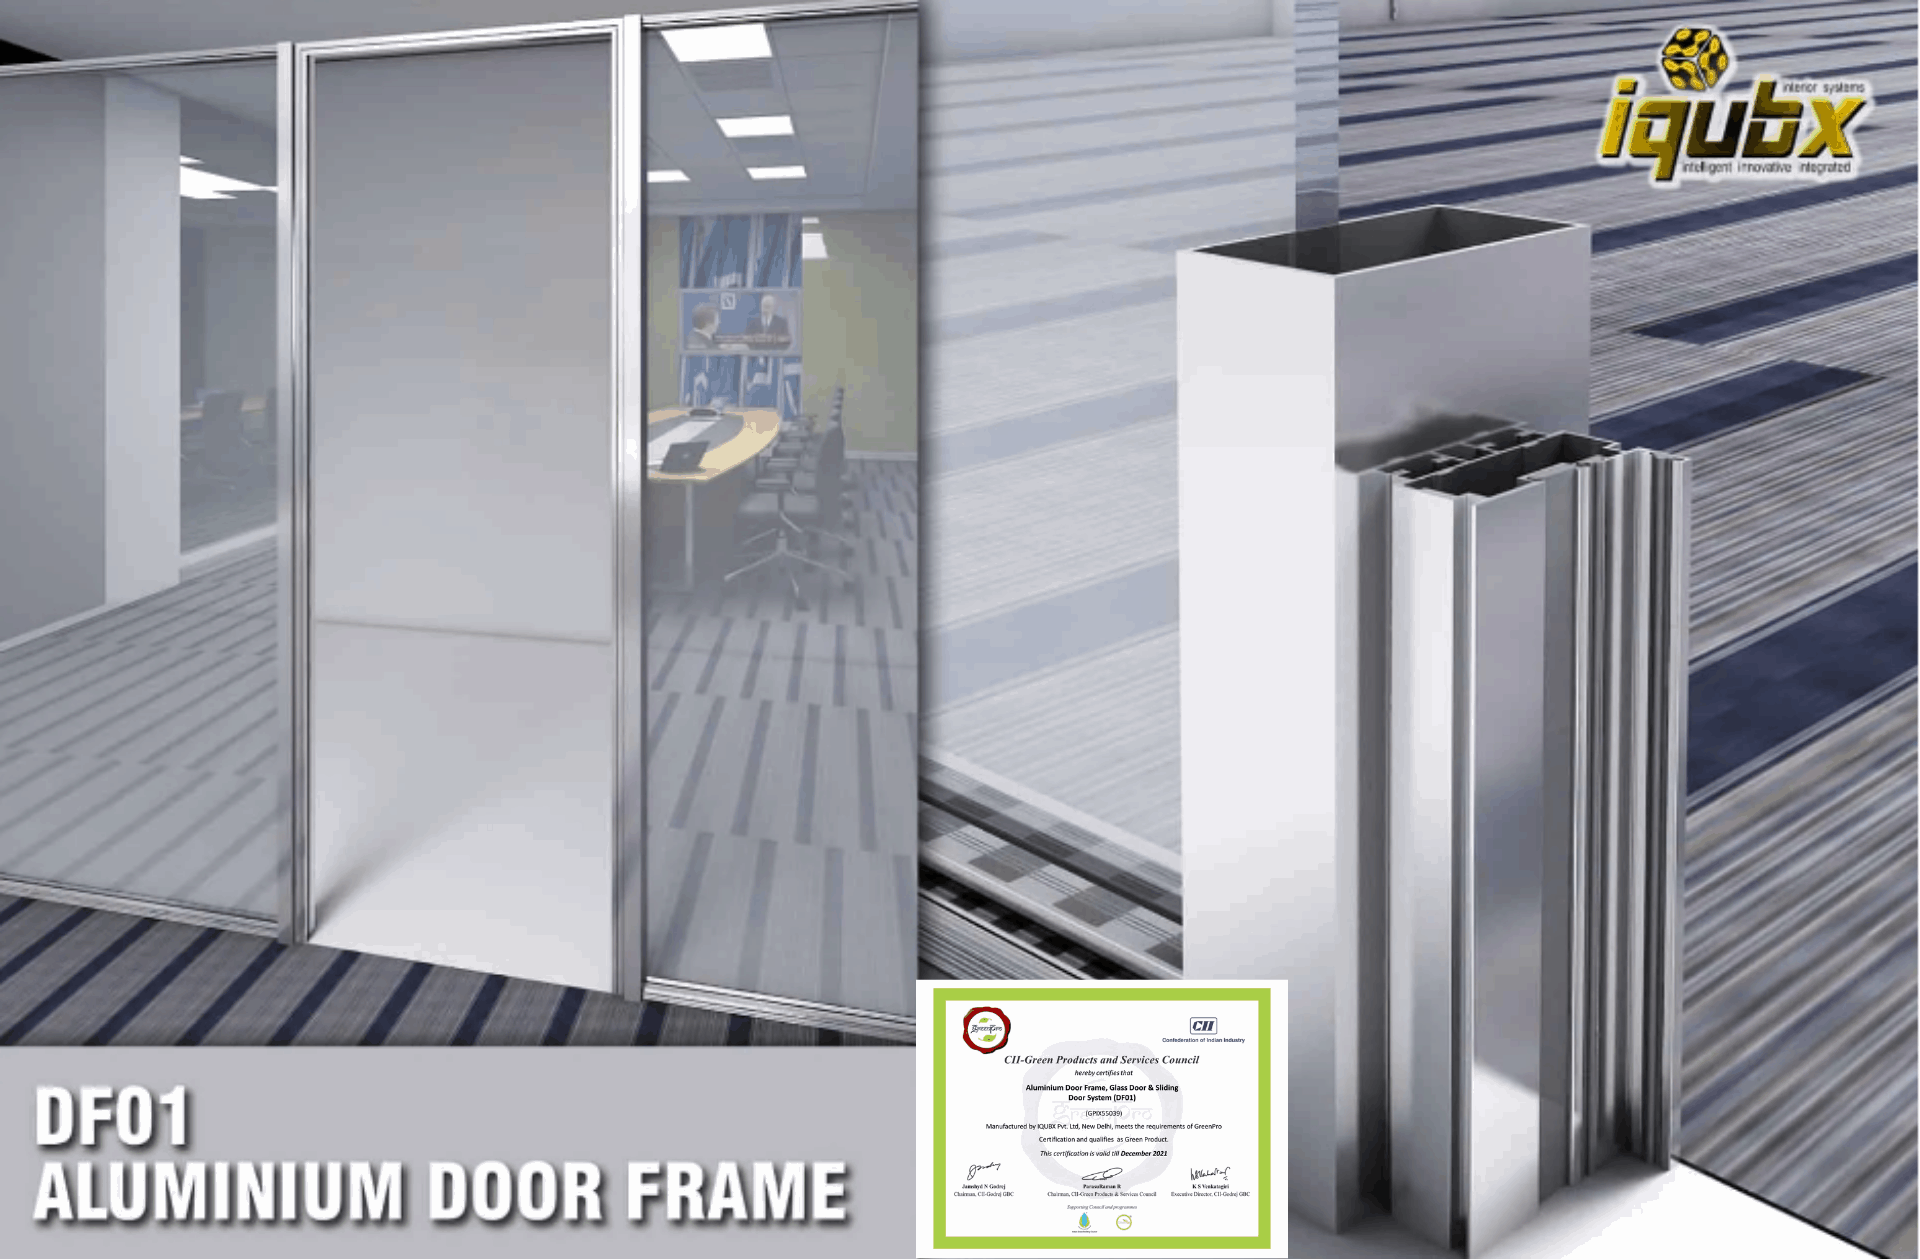 Aluminium Door frame certified green pro